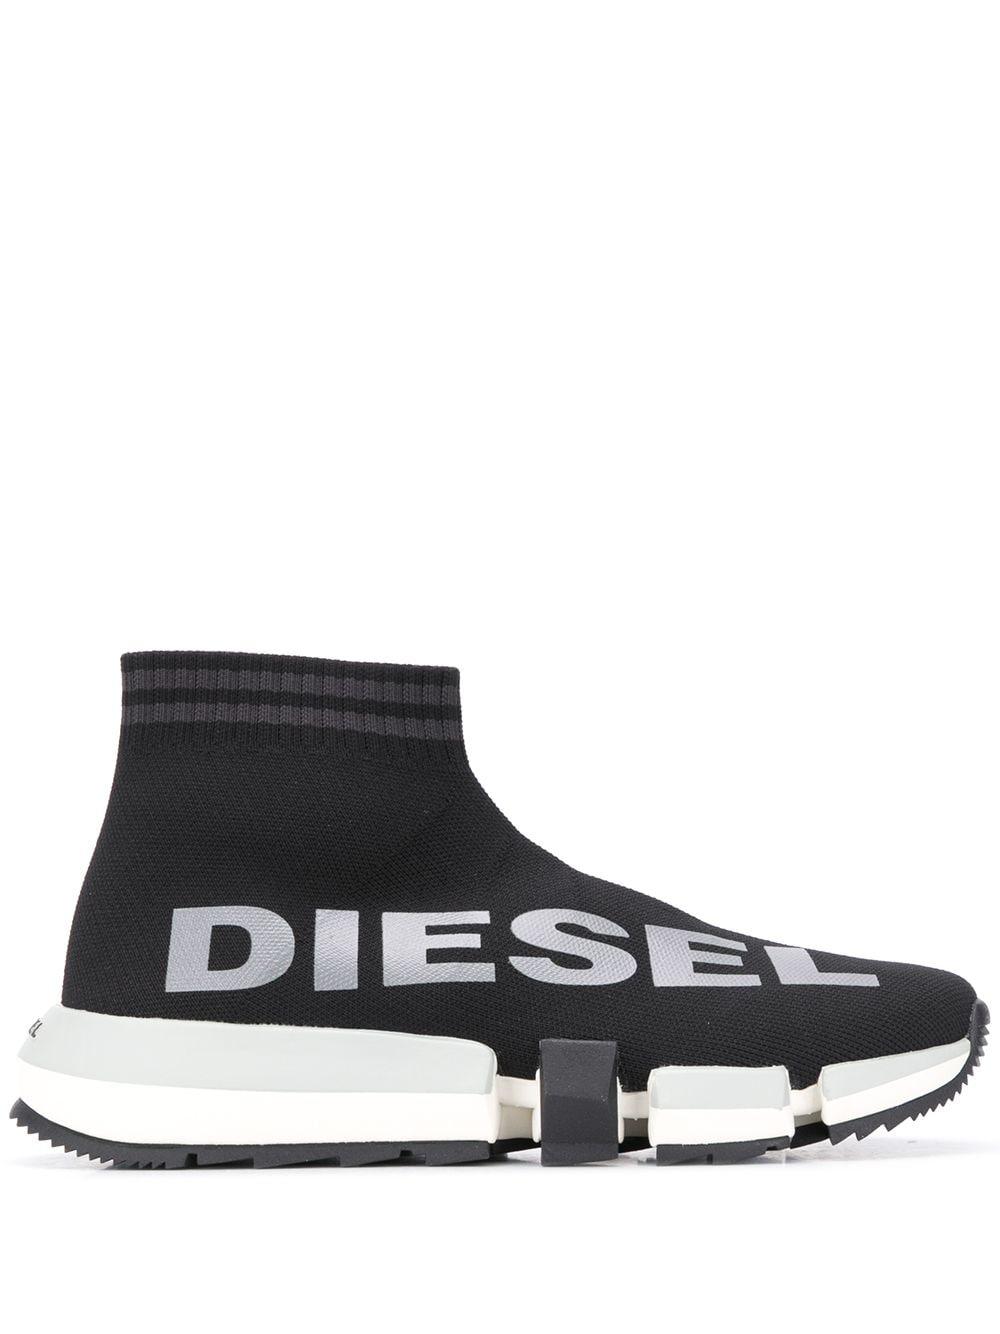 DIESEL Synthetic H-padola Mid-sock Sneakers in Black - Lyst